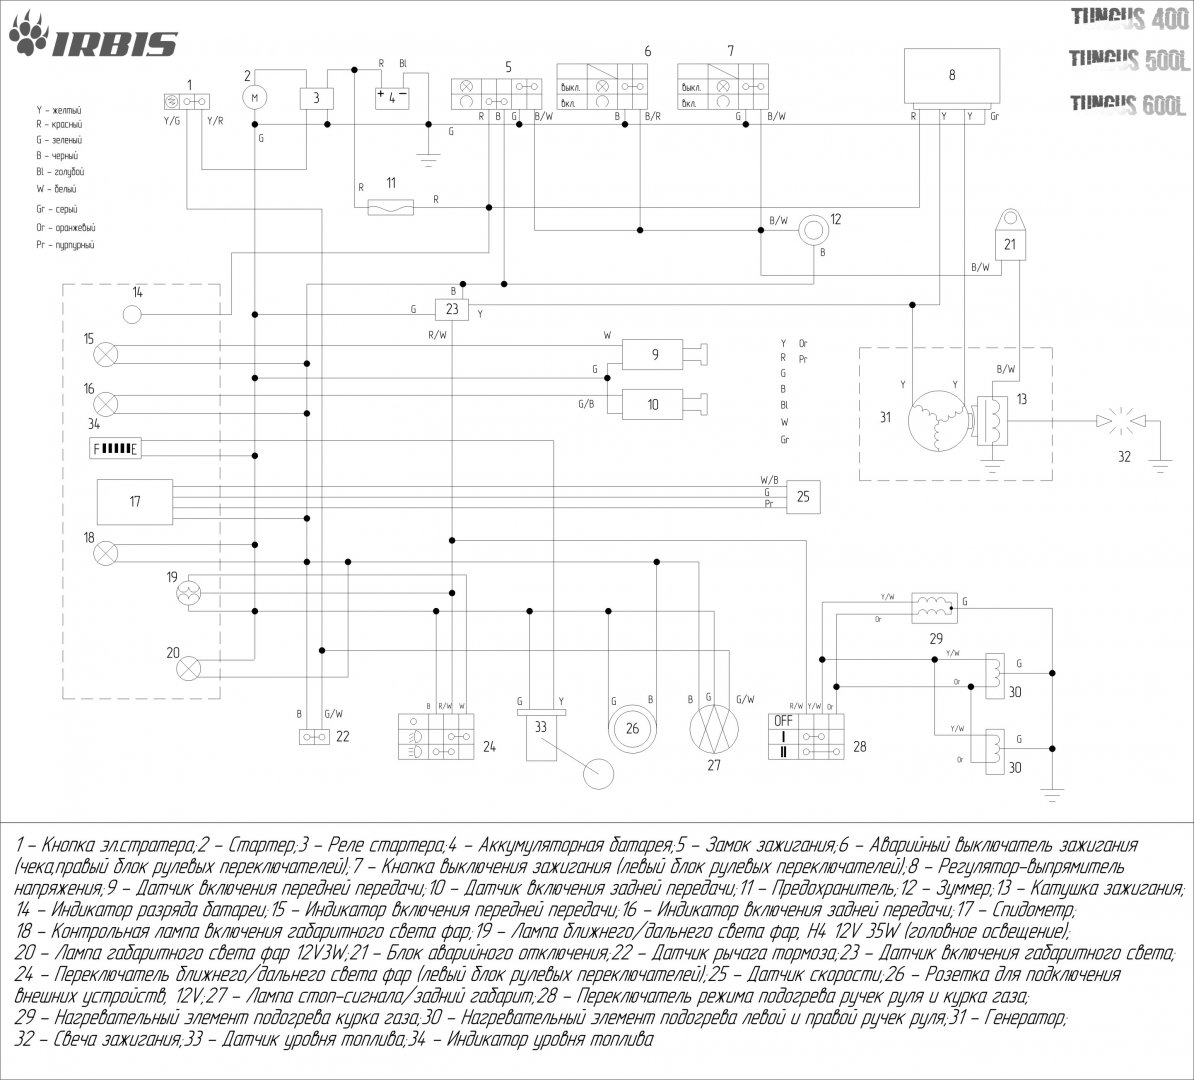 Схема электрическая IRBIS TUNGUS 400 500L 600L.jpg